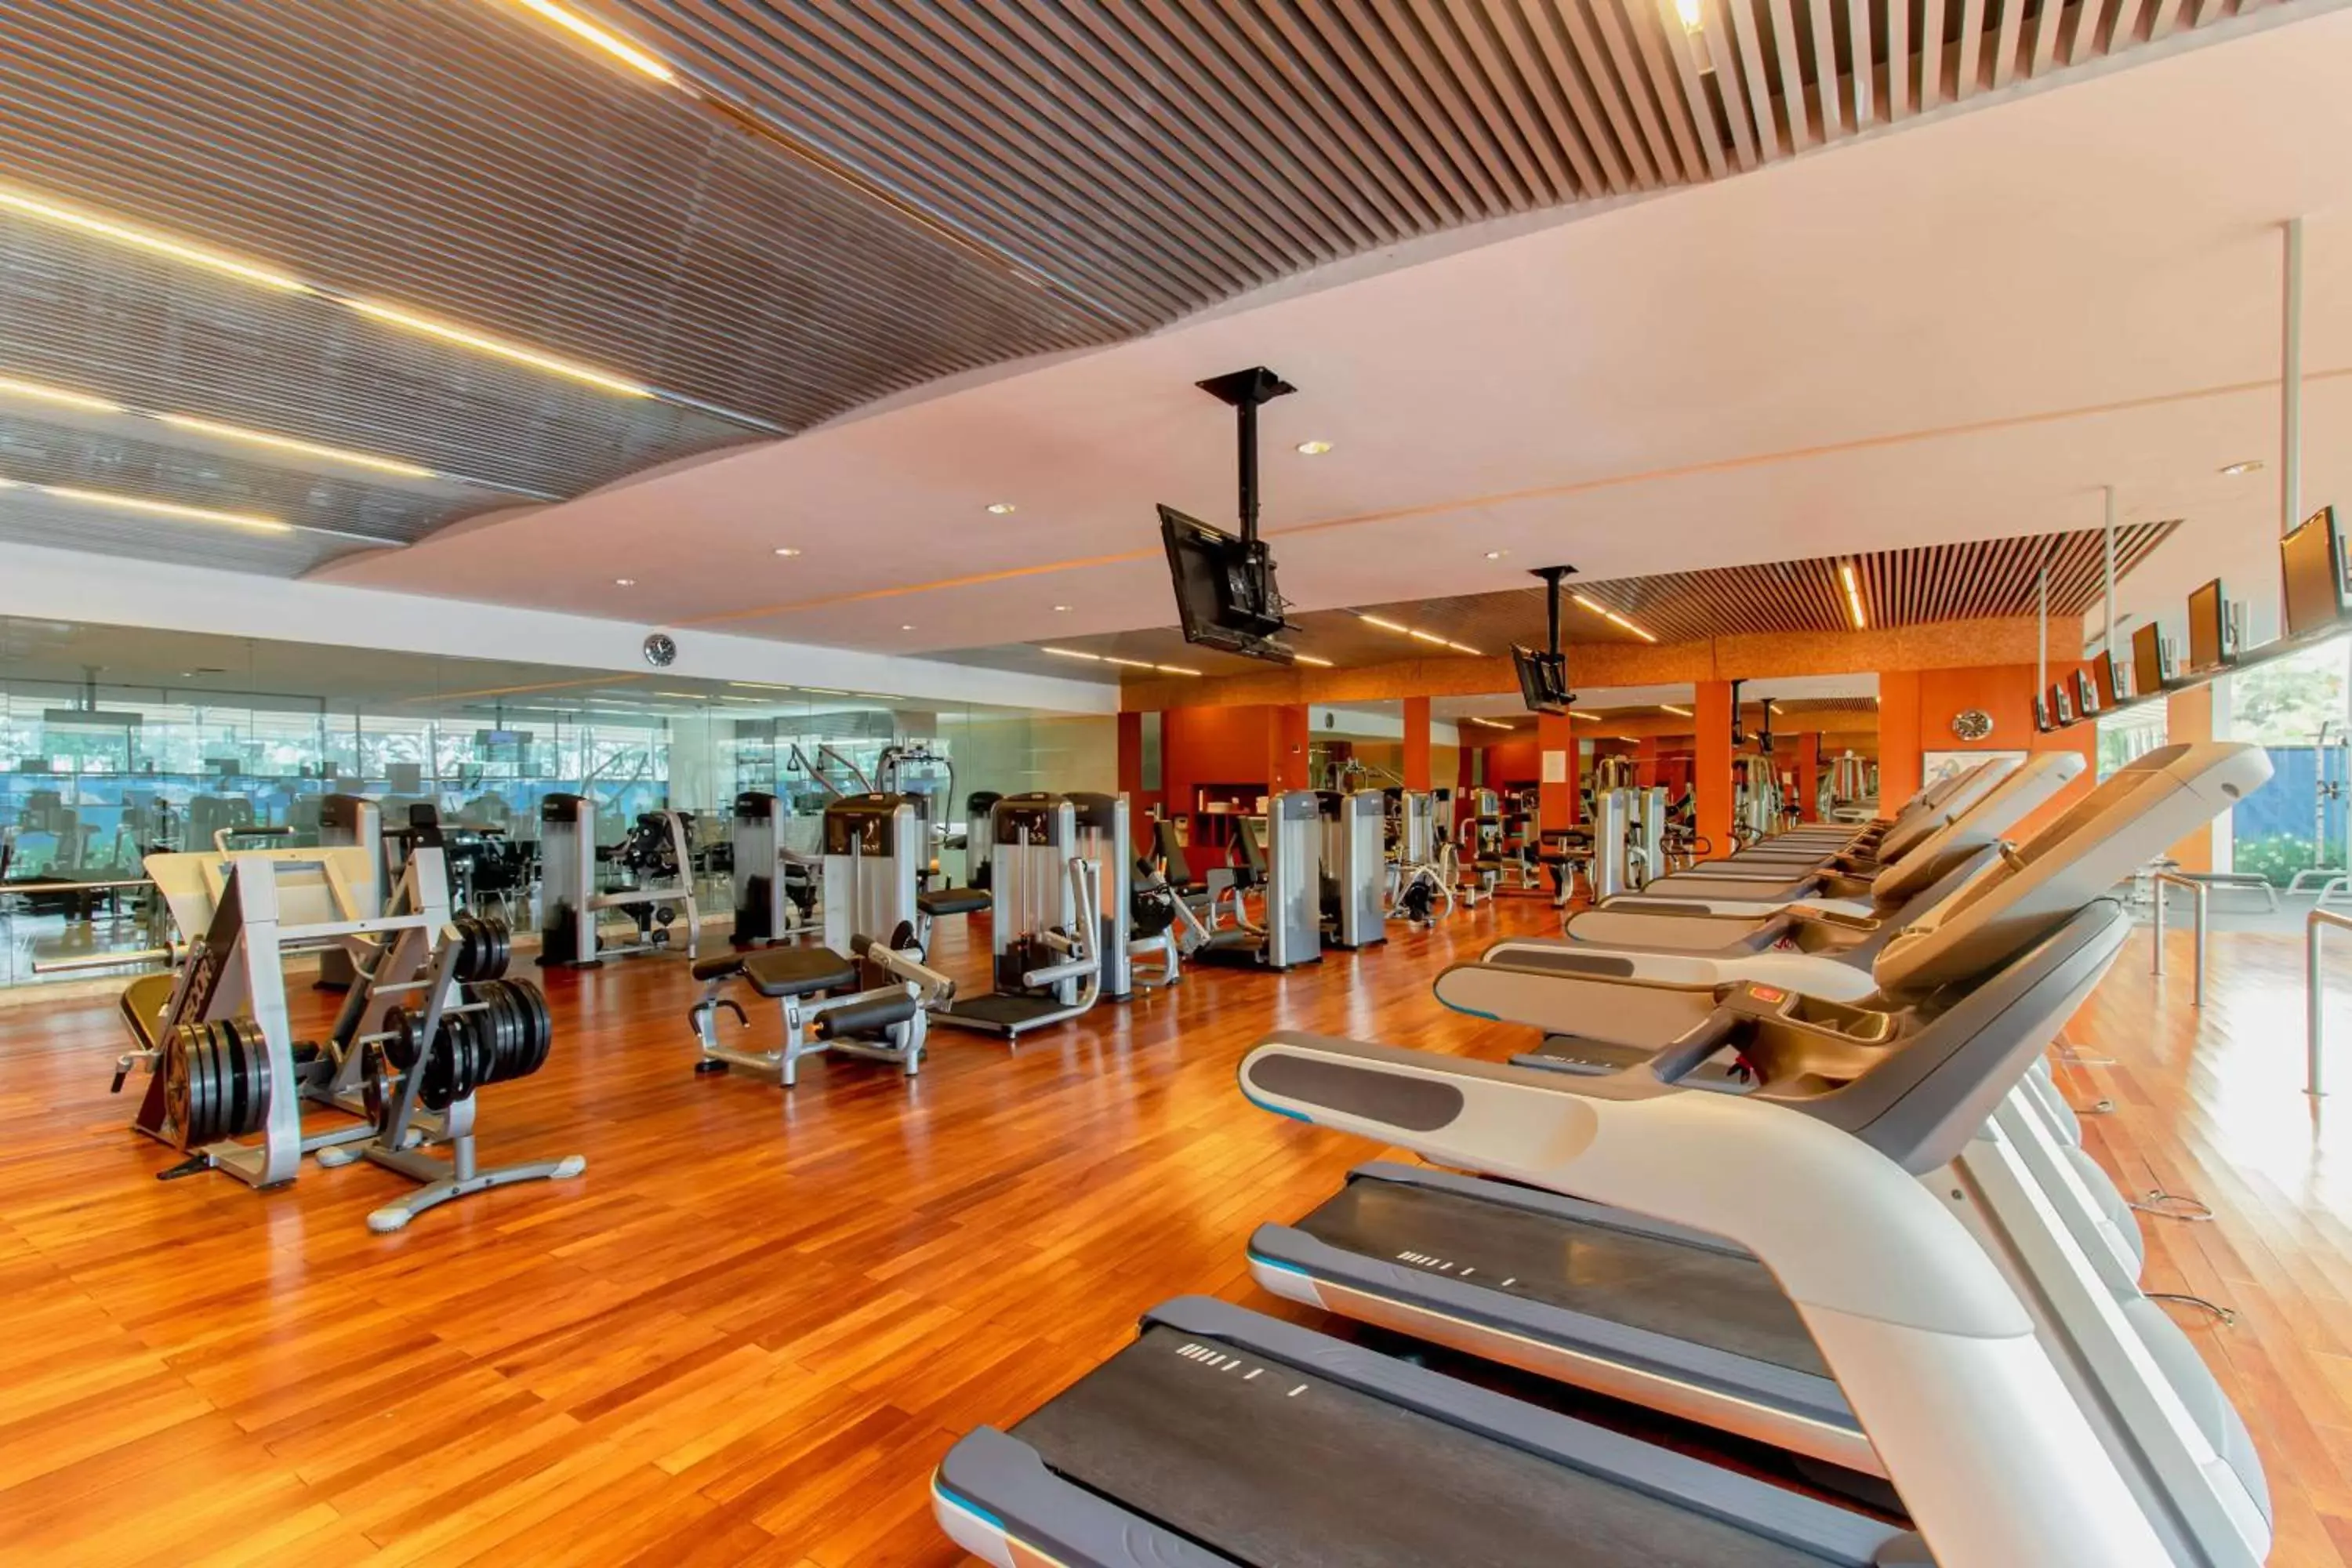 Fitness centre/facilities, Fitness Center/Facilities in Grand Hyatt Jakarta